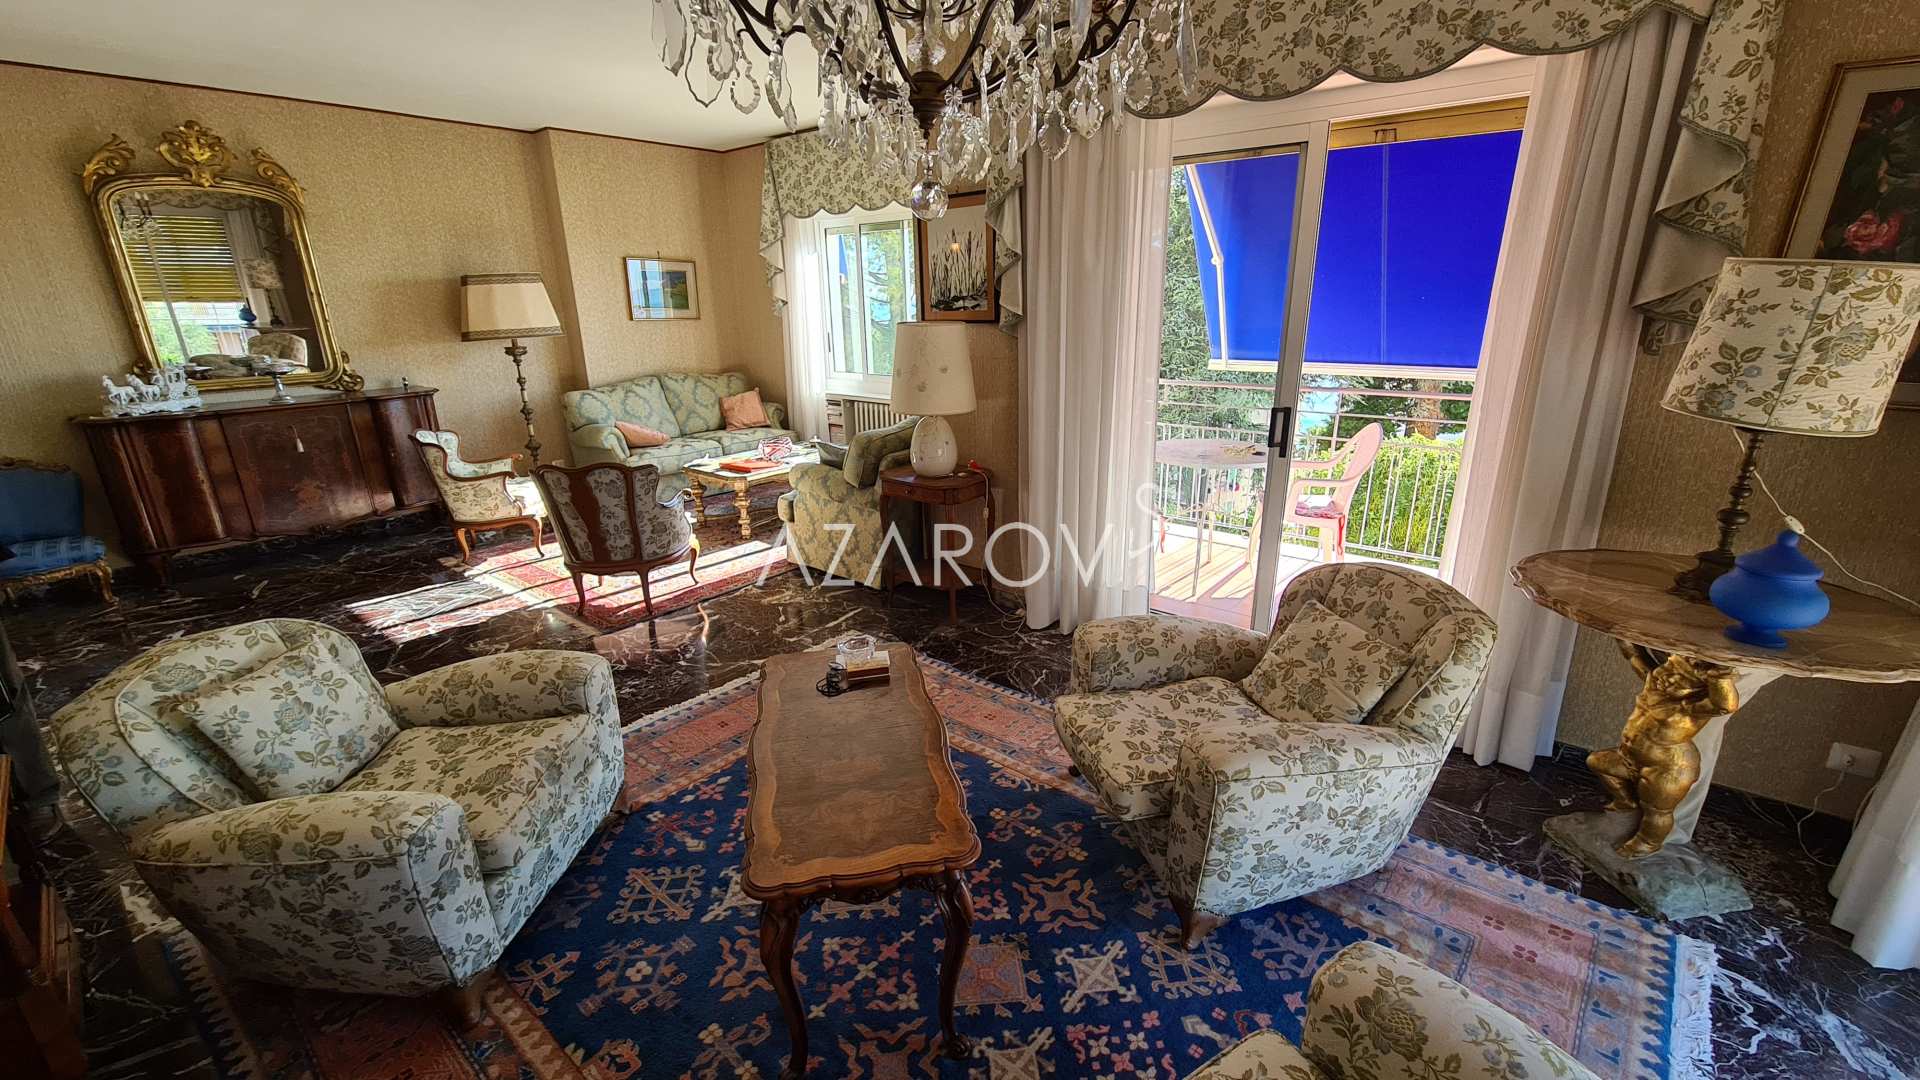 Appartement in Sanremo 160 m2 met uitzicht op zee met park